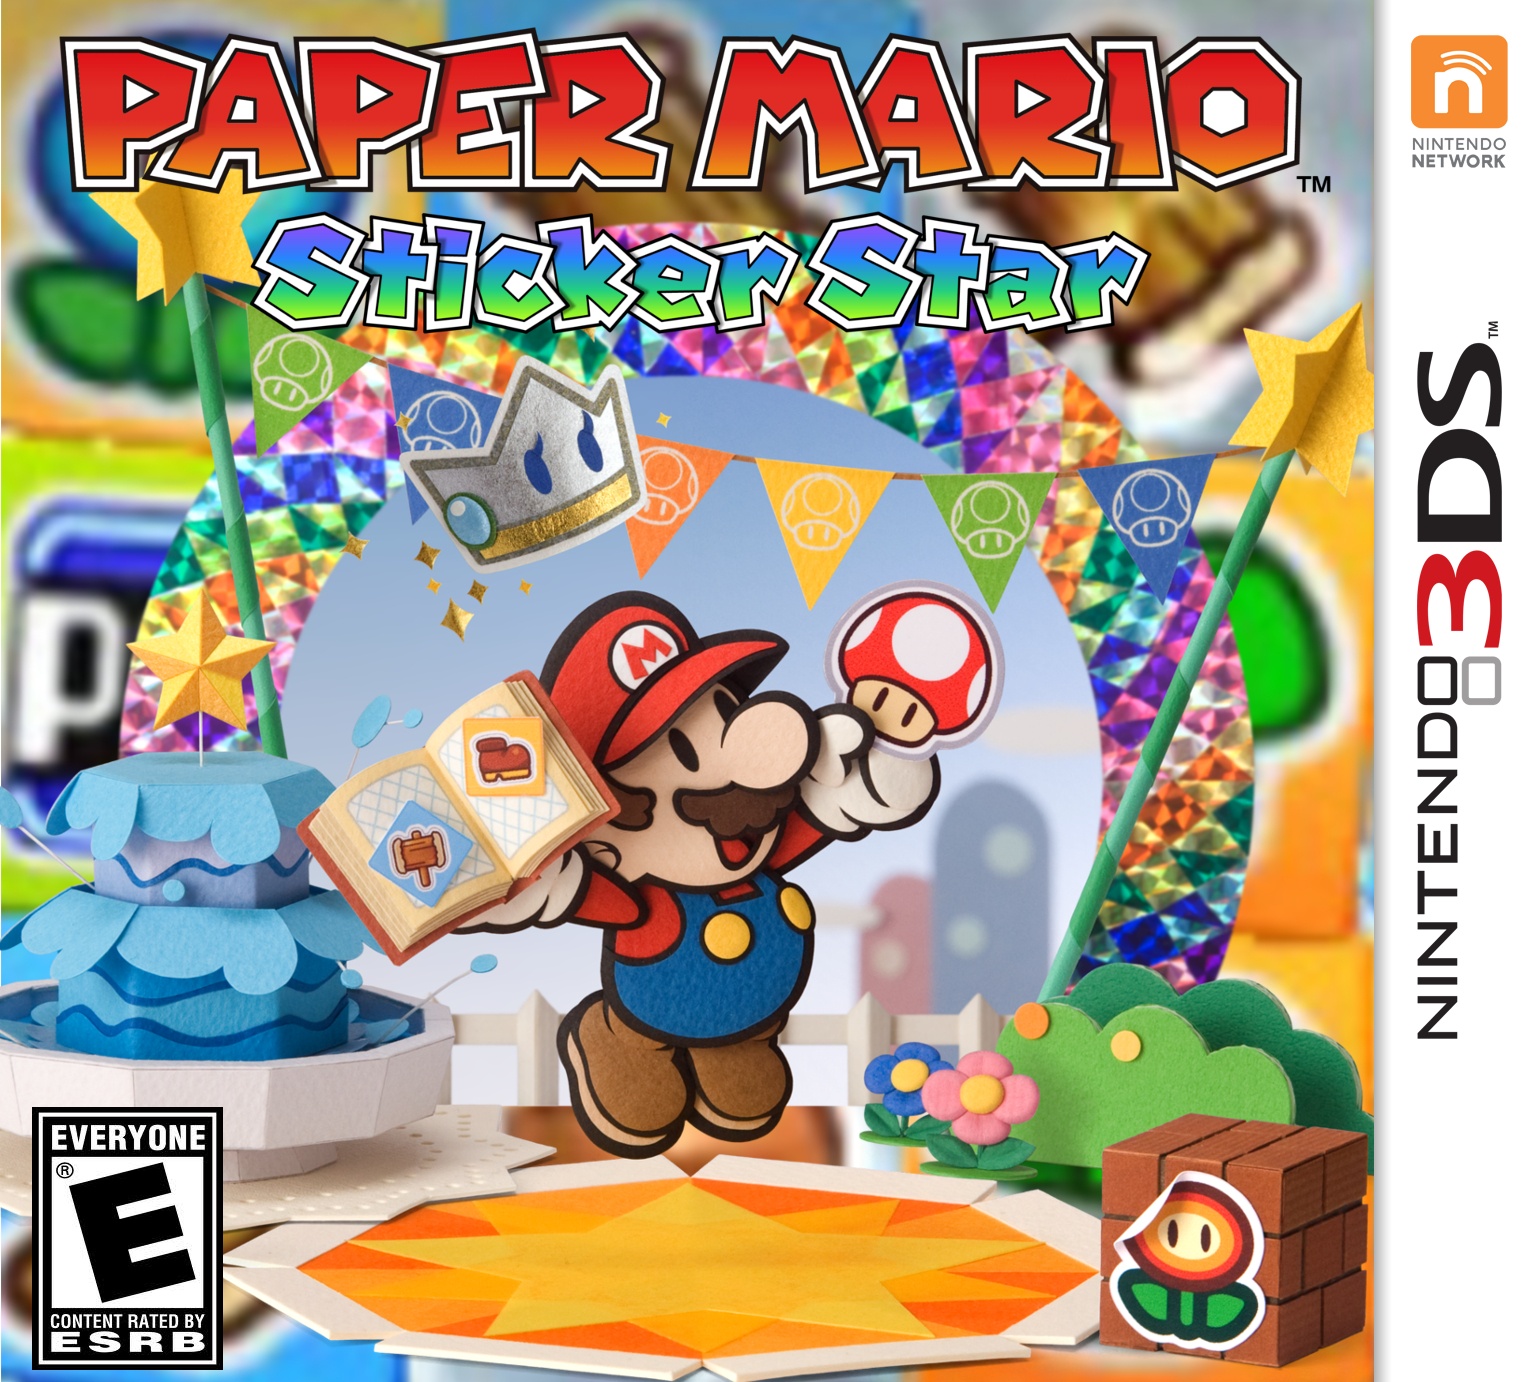 Paper Mario Sticker Star 